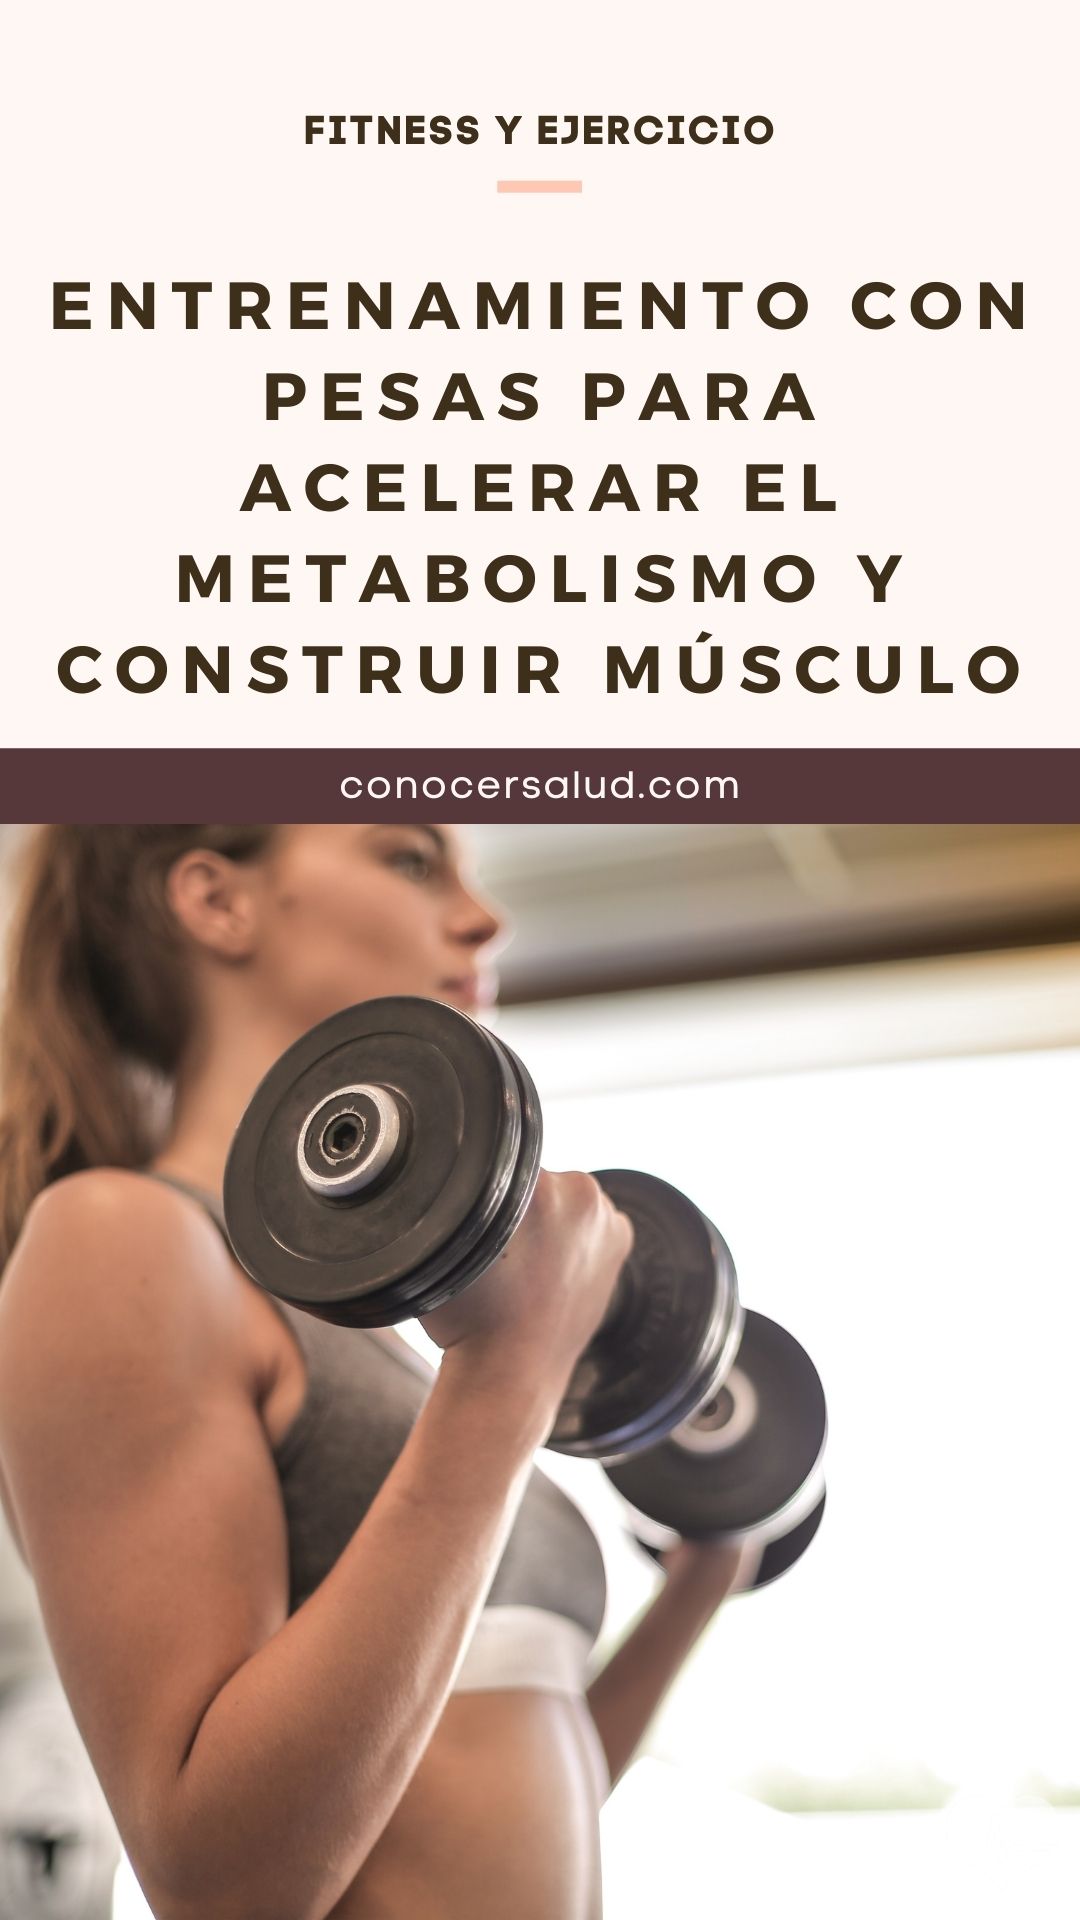 Entrenamiento con pesas para acelerar el metabolismo y construir músculo